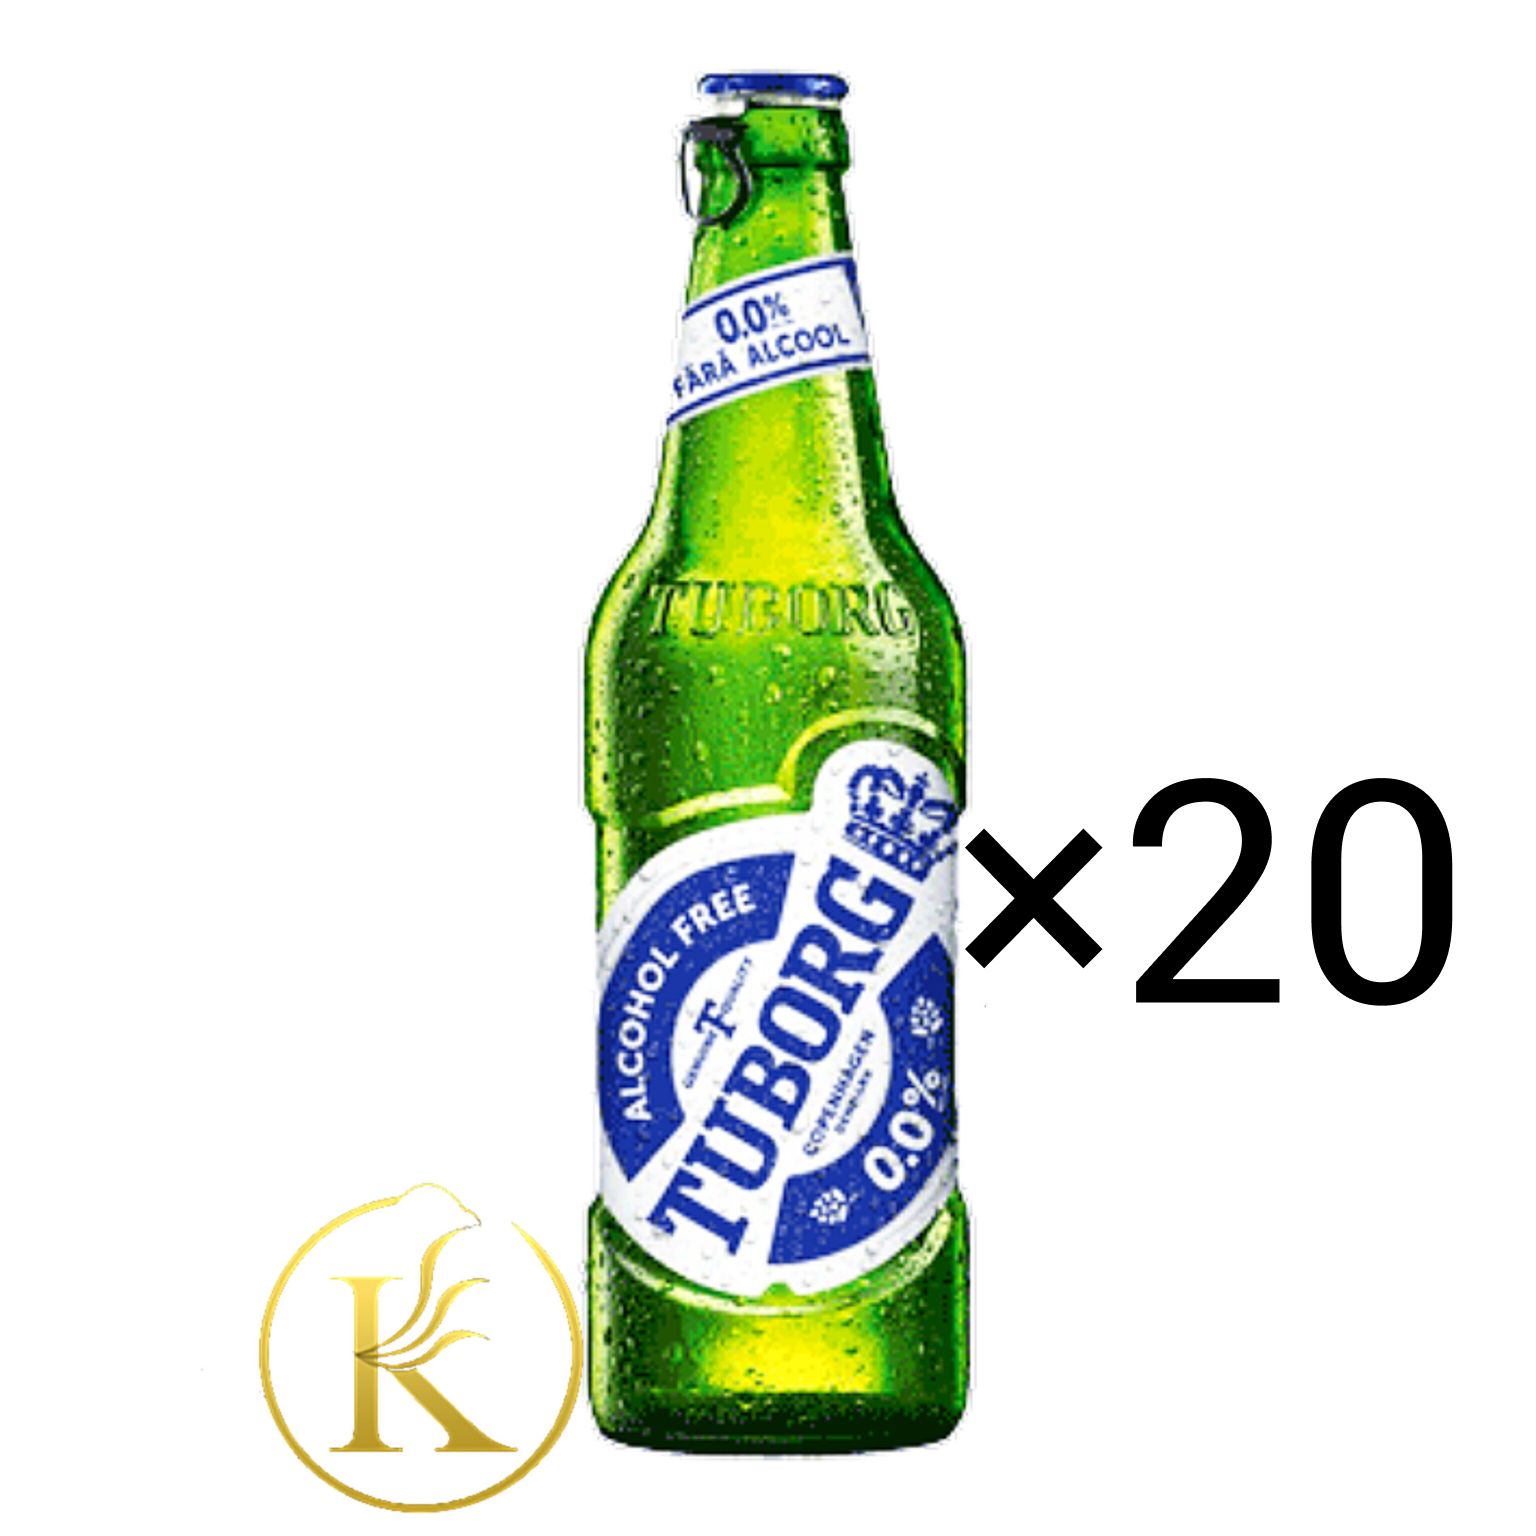 نوشیدنی آبجو بدون الکل توبورگ کلاسیک شیشه ای ۵۰۰ میل باکس ۲۰ عددی tuborg